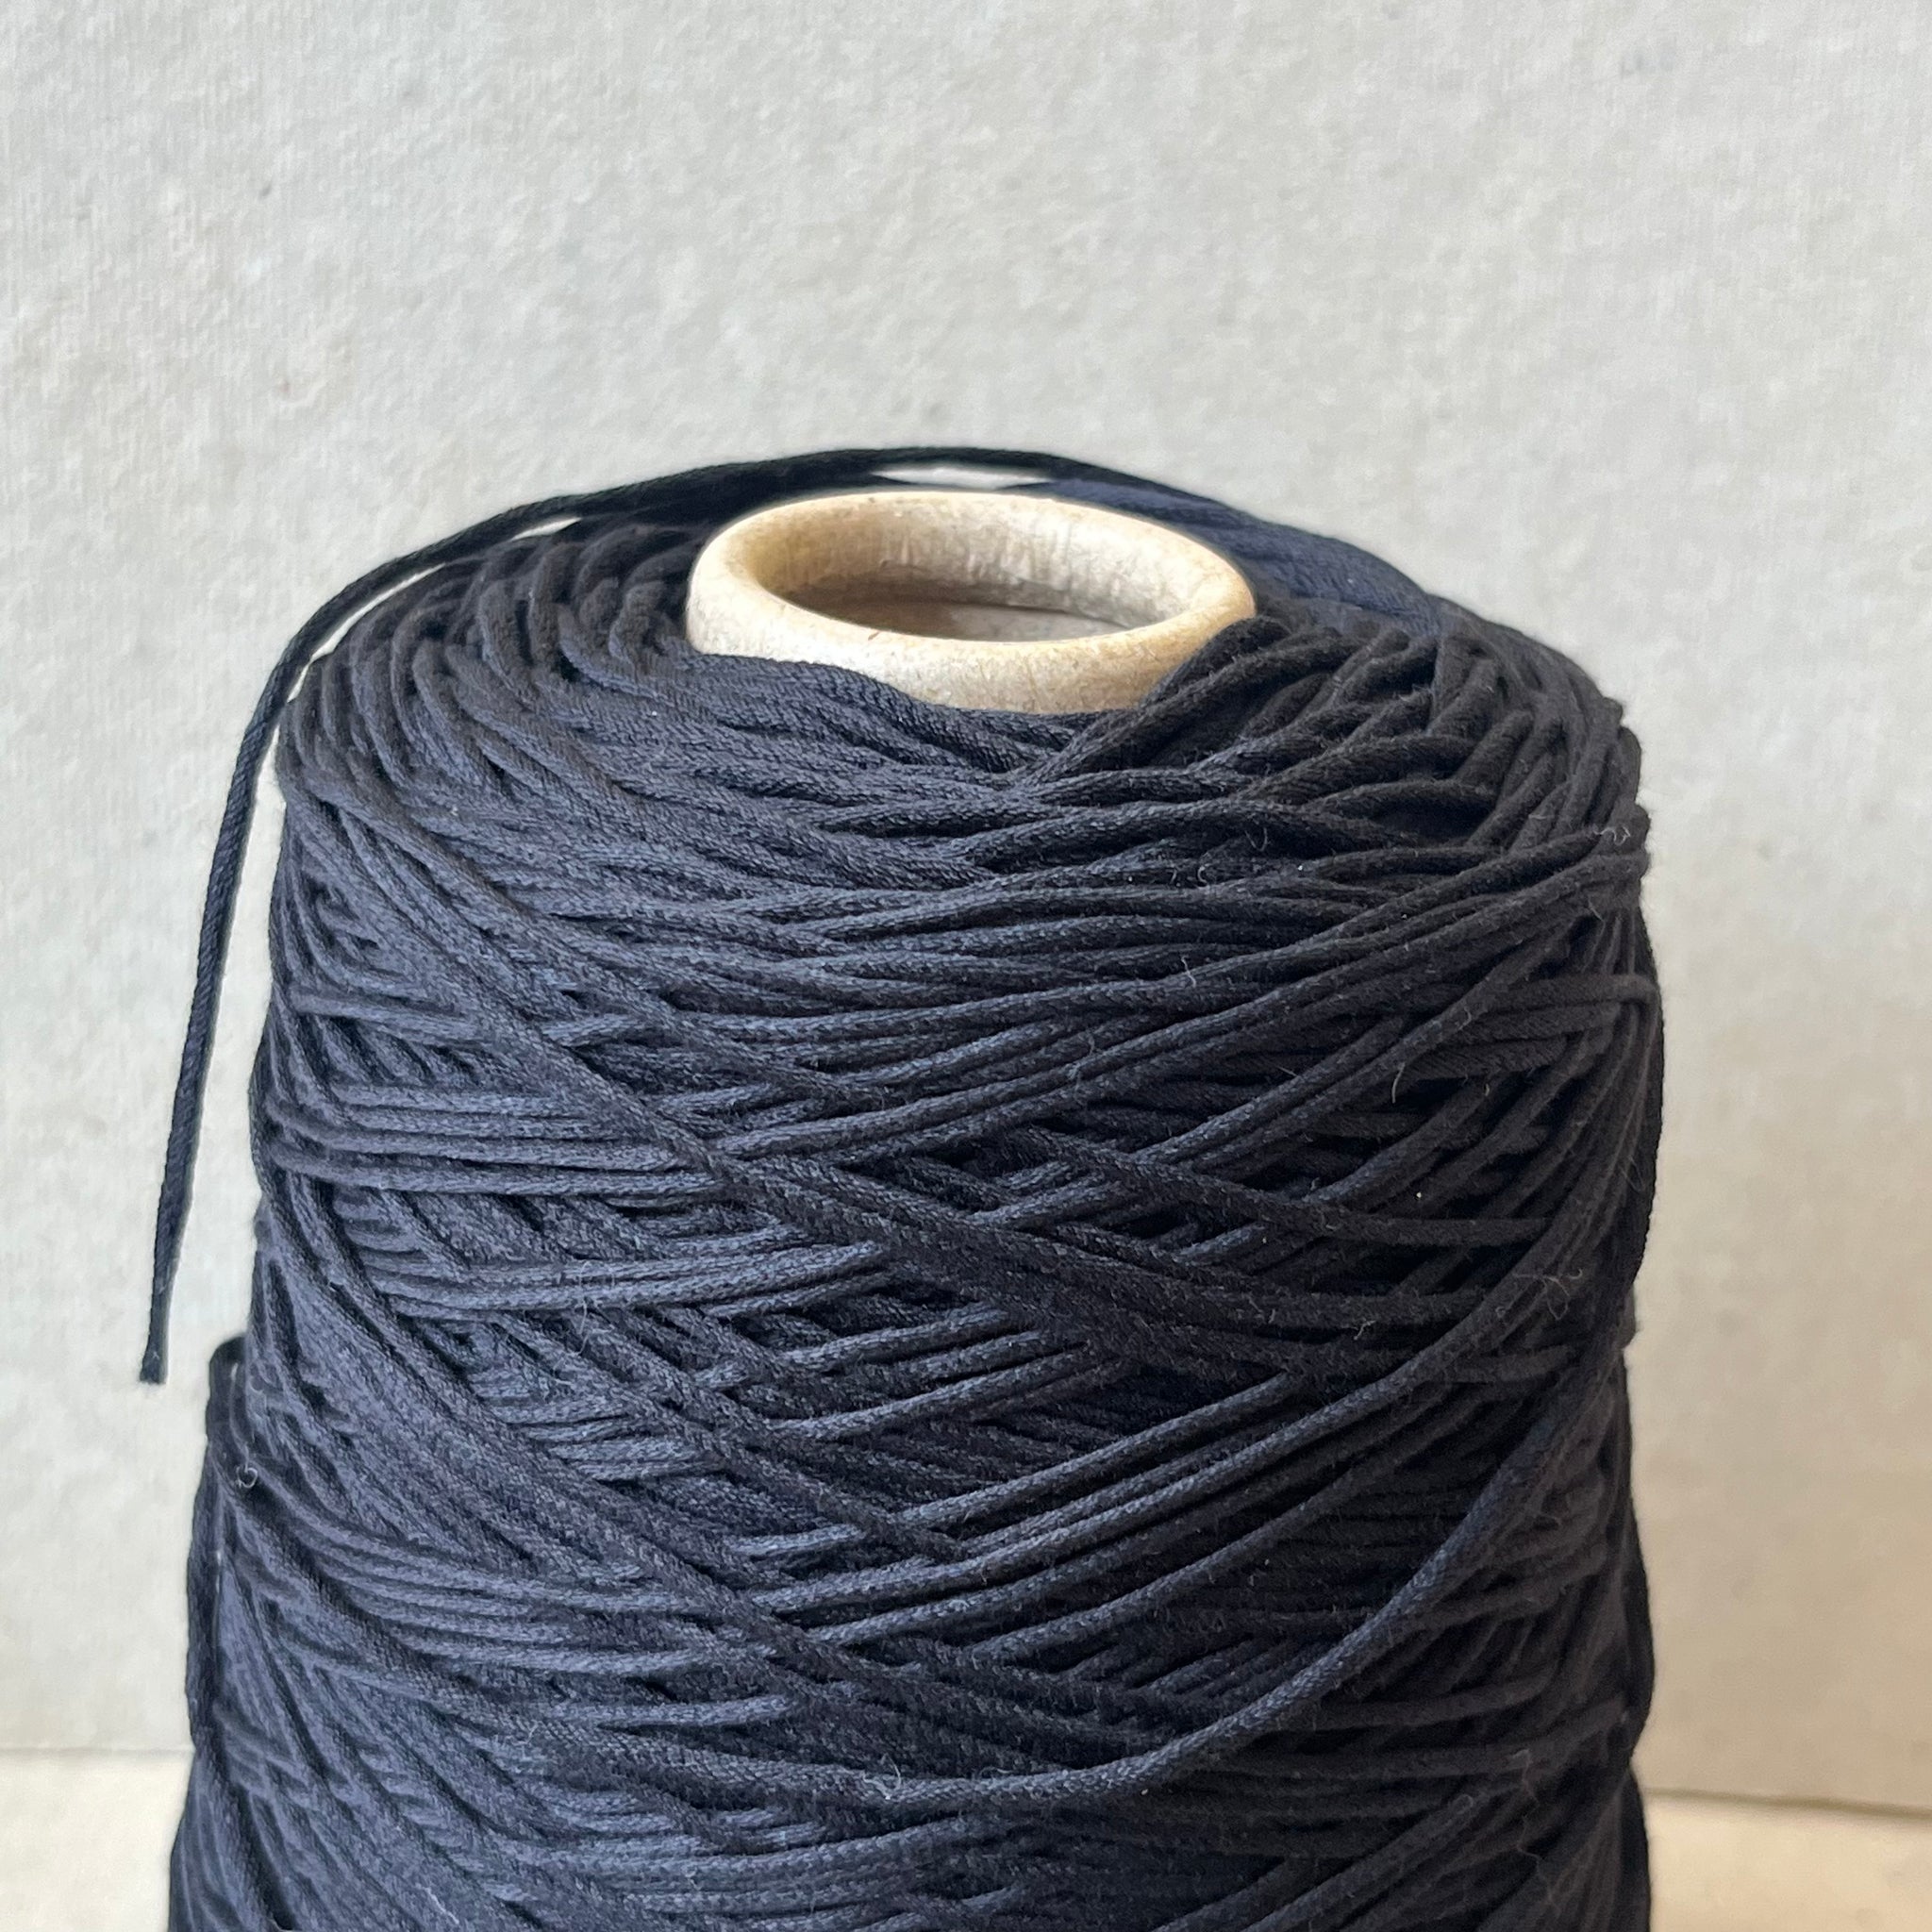 Chunky Cotton Cord - Blue black